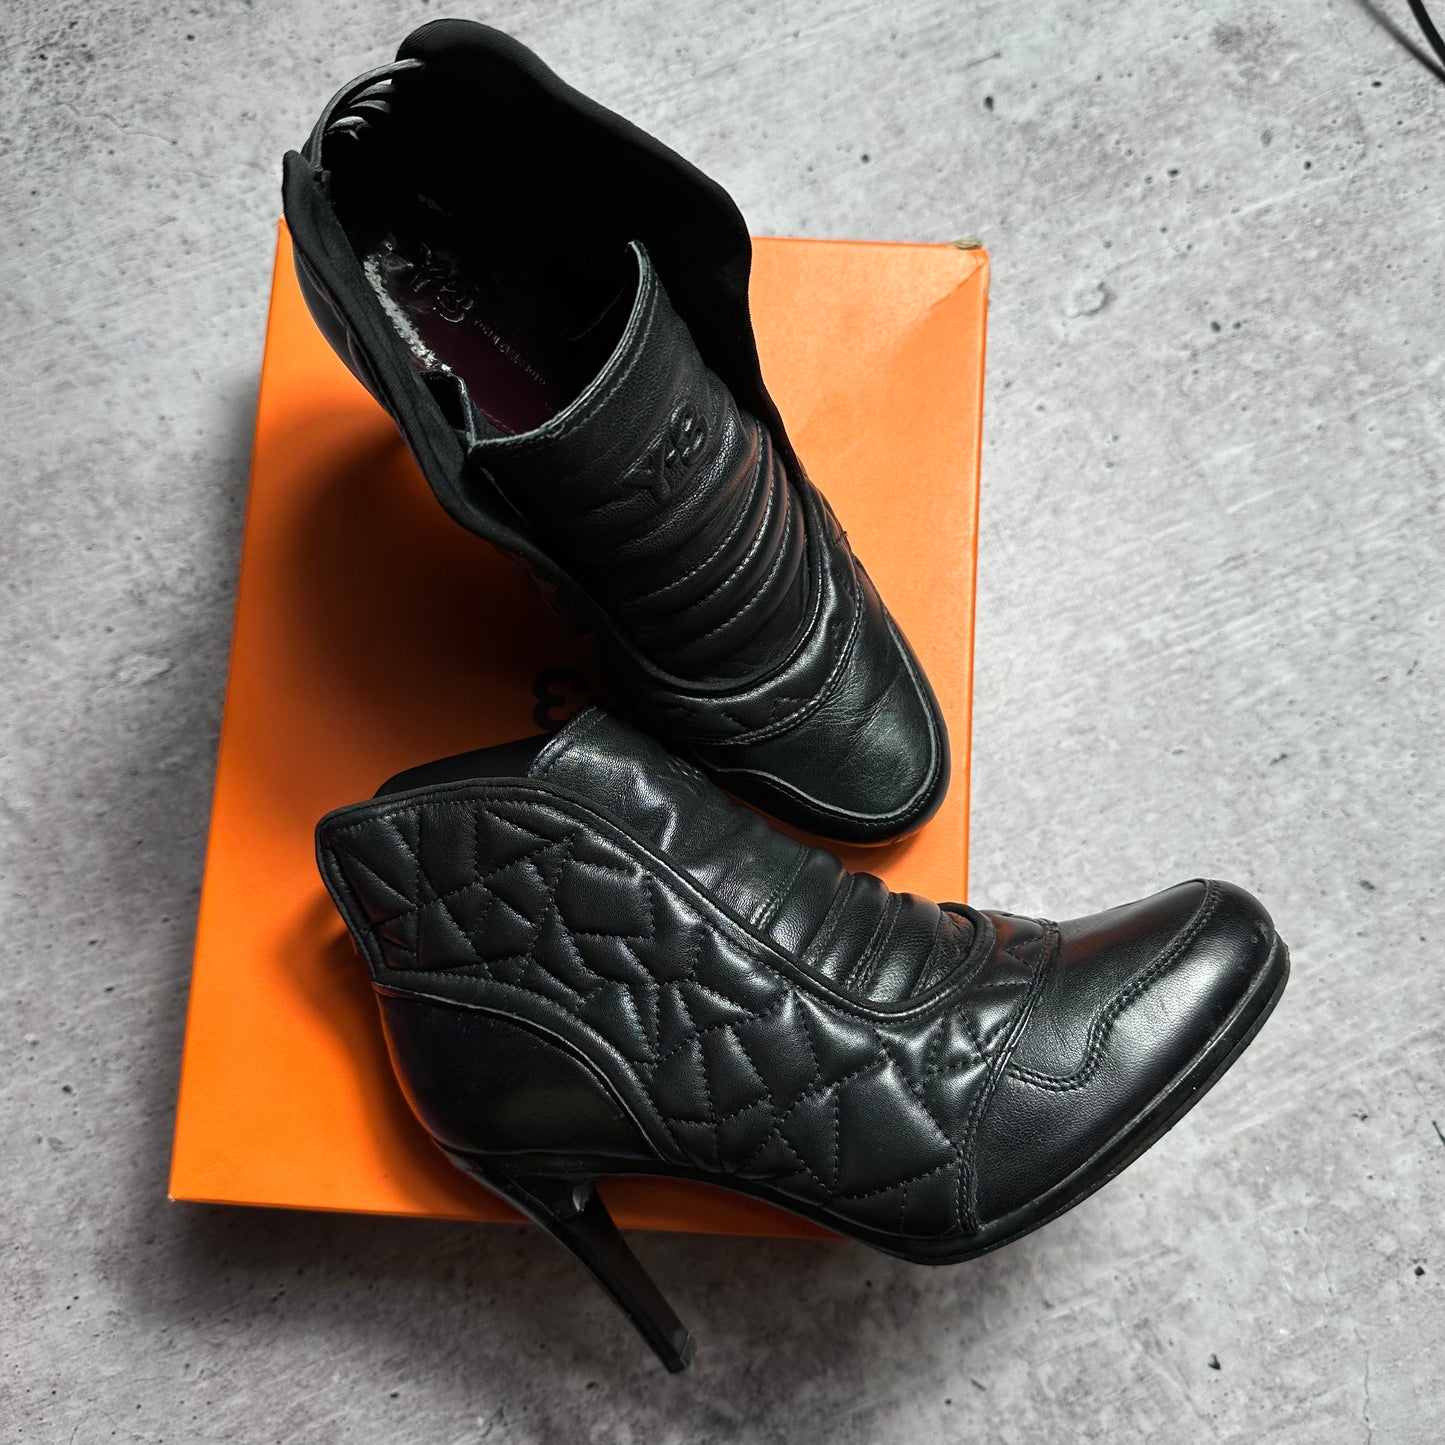 Yohji Yamamoto Adidas Y3 Leather Boots 37.5/38.5